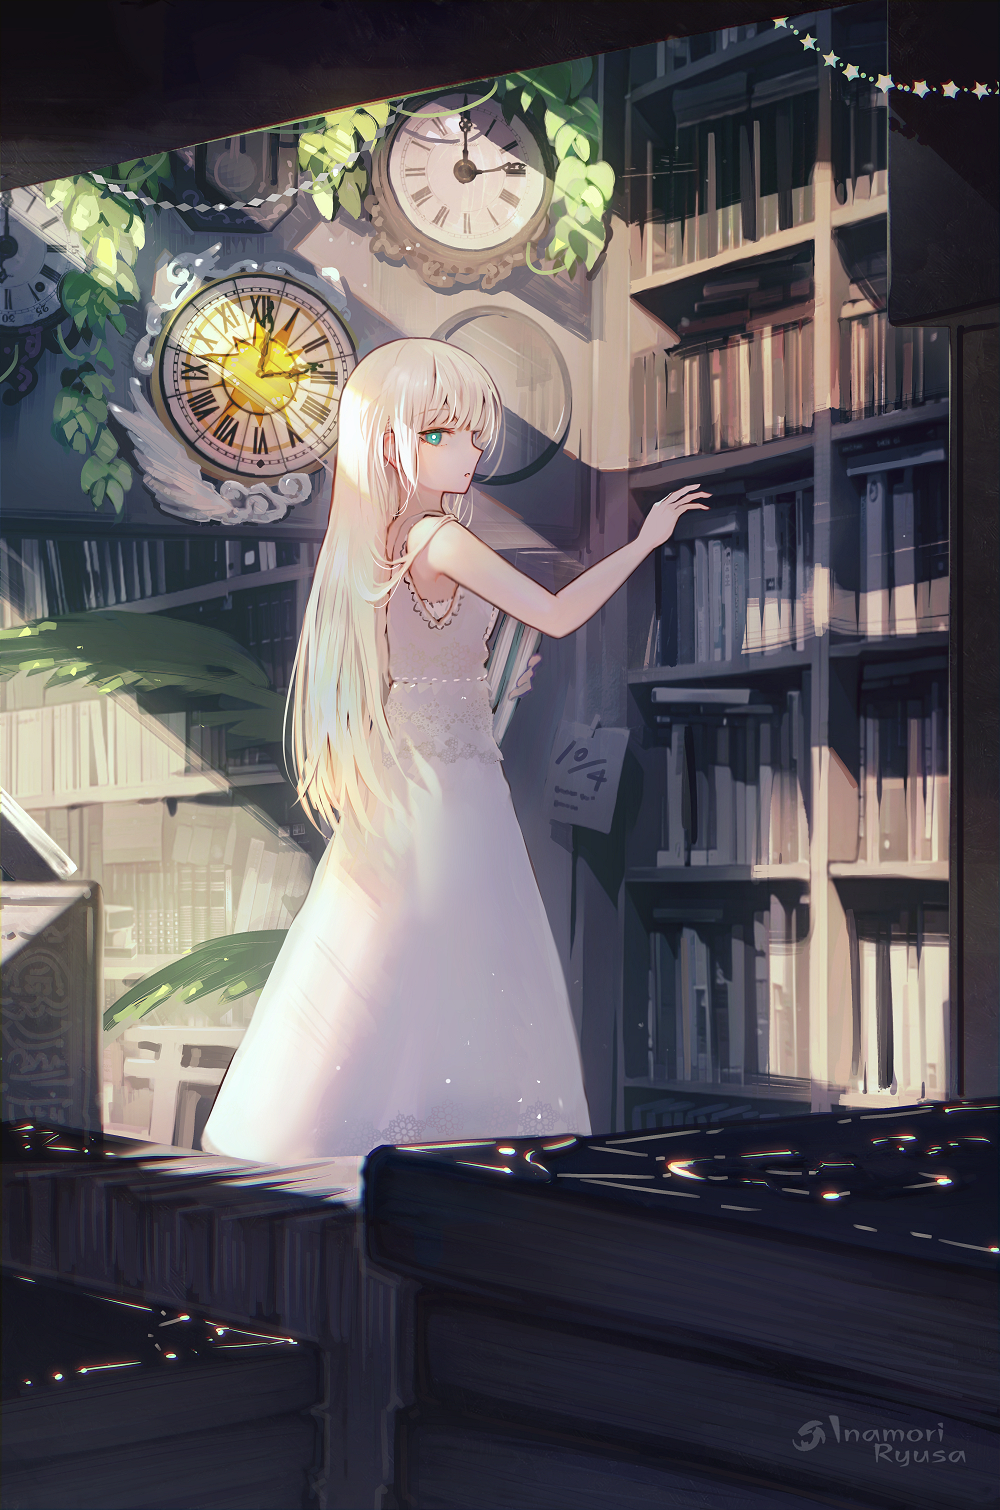 古书店的天使-美少女女孩子